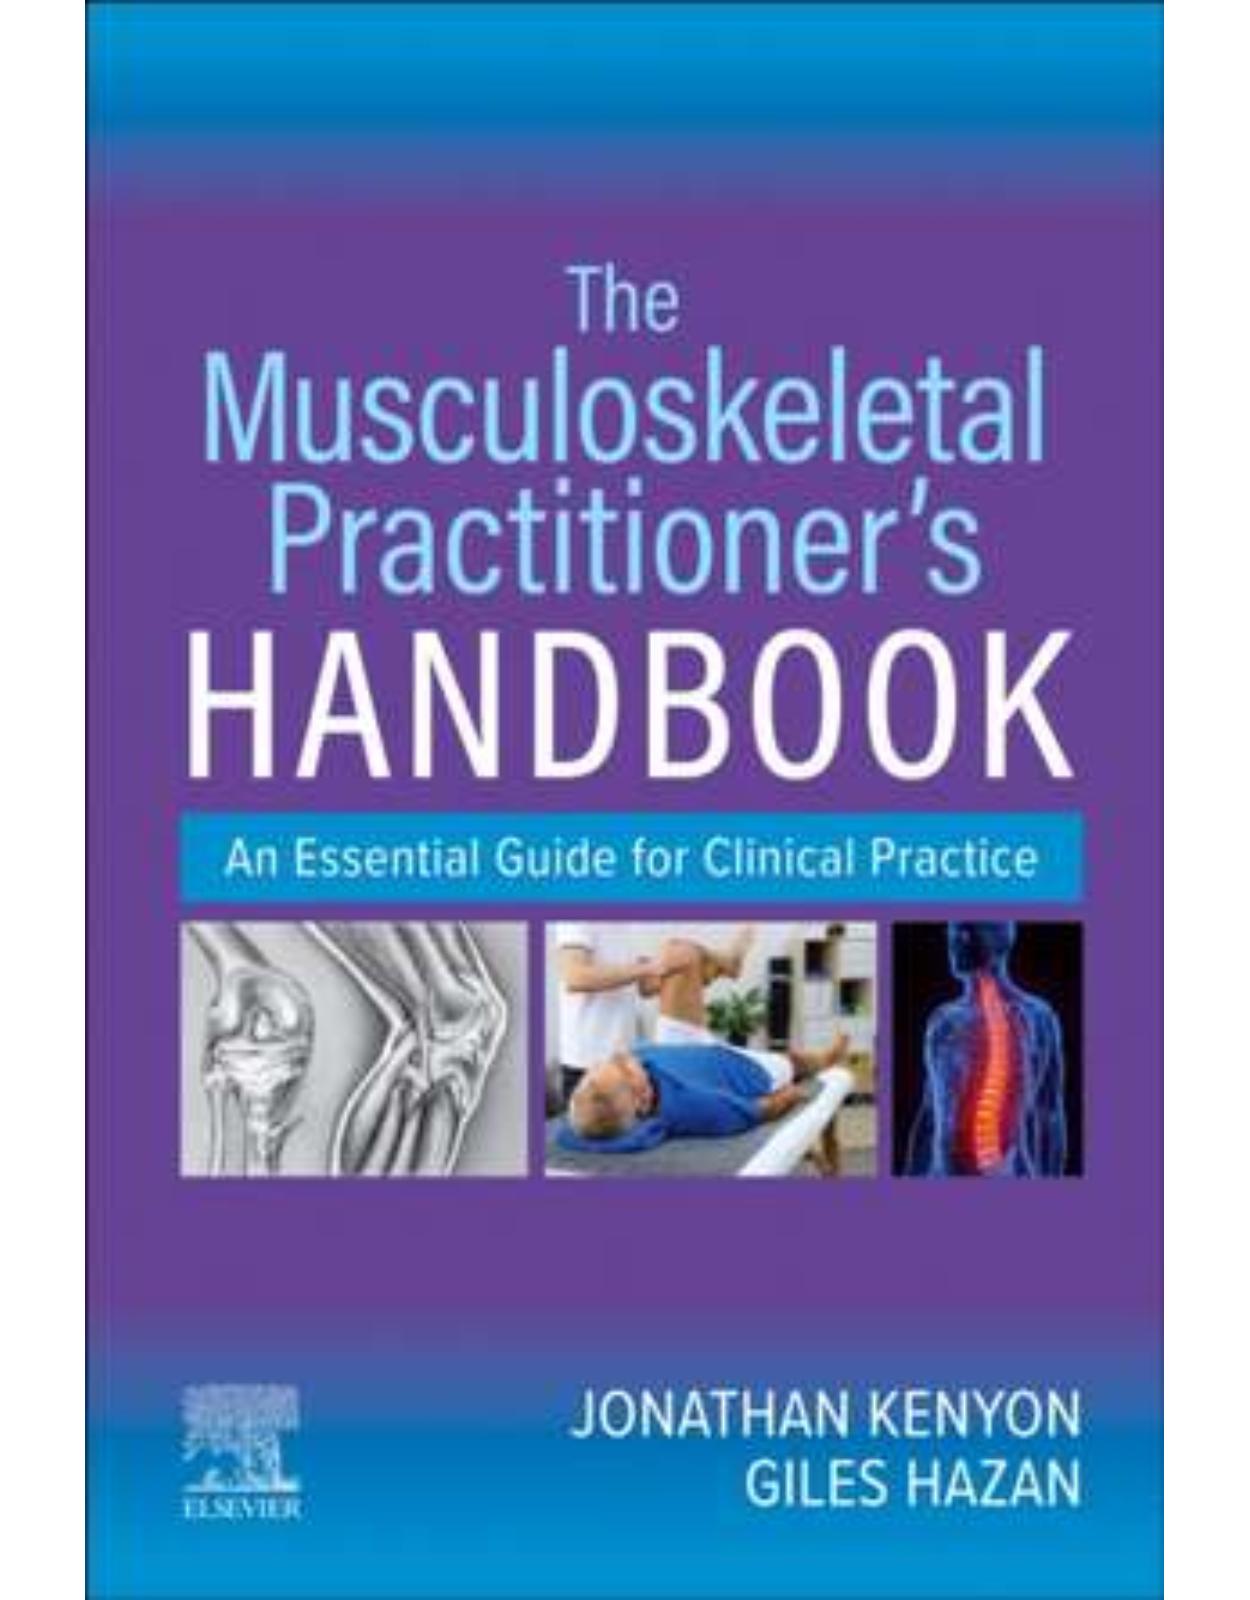 The Musculoskeletal Practitioner's Handbook